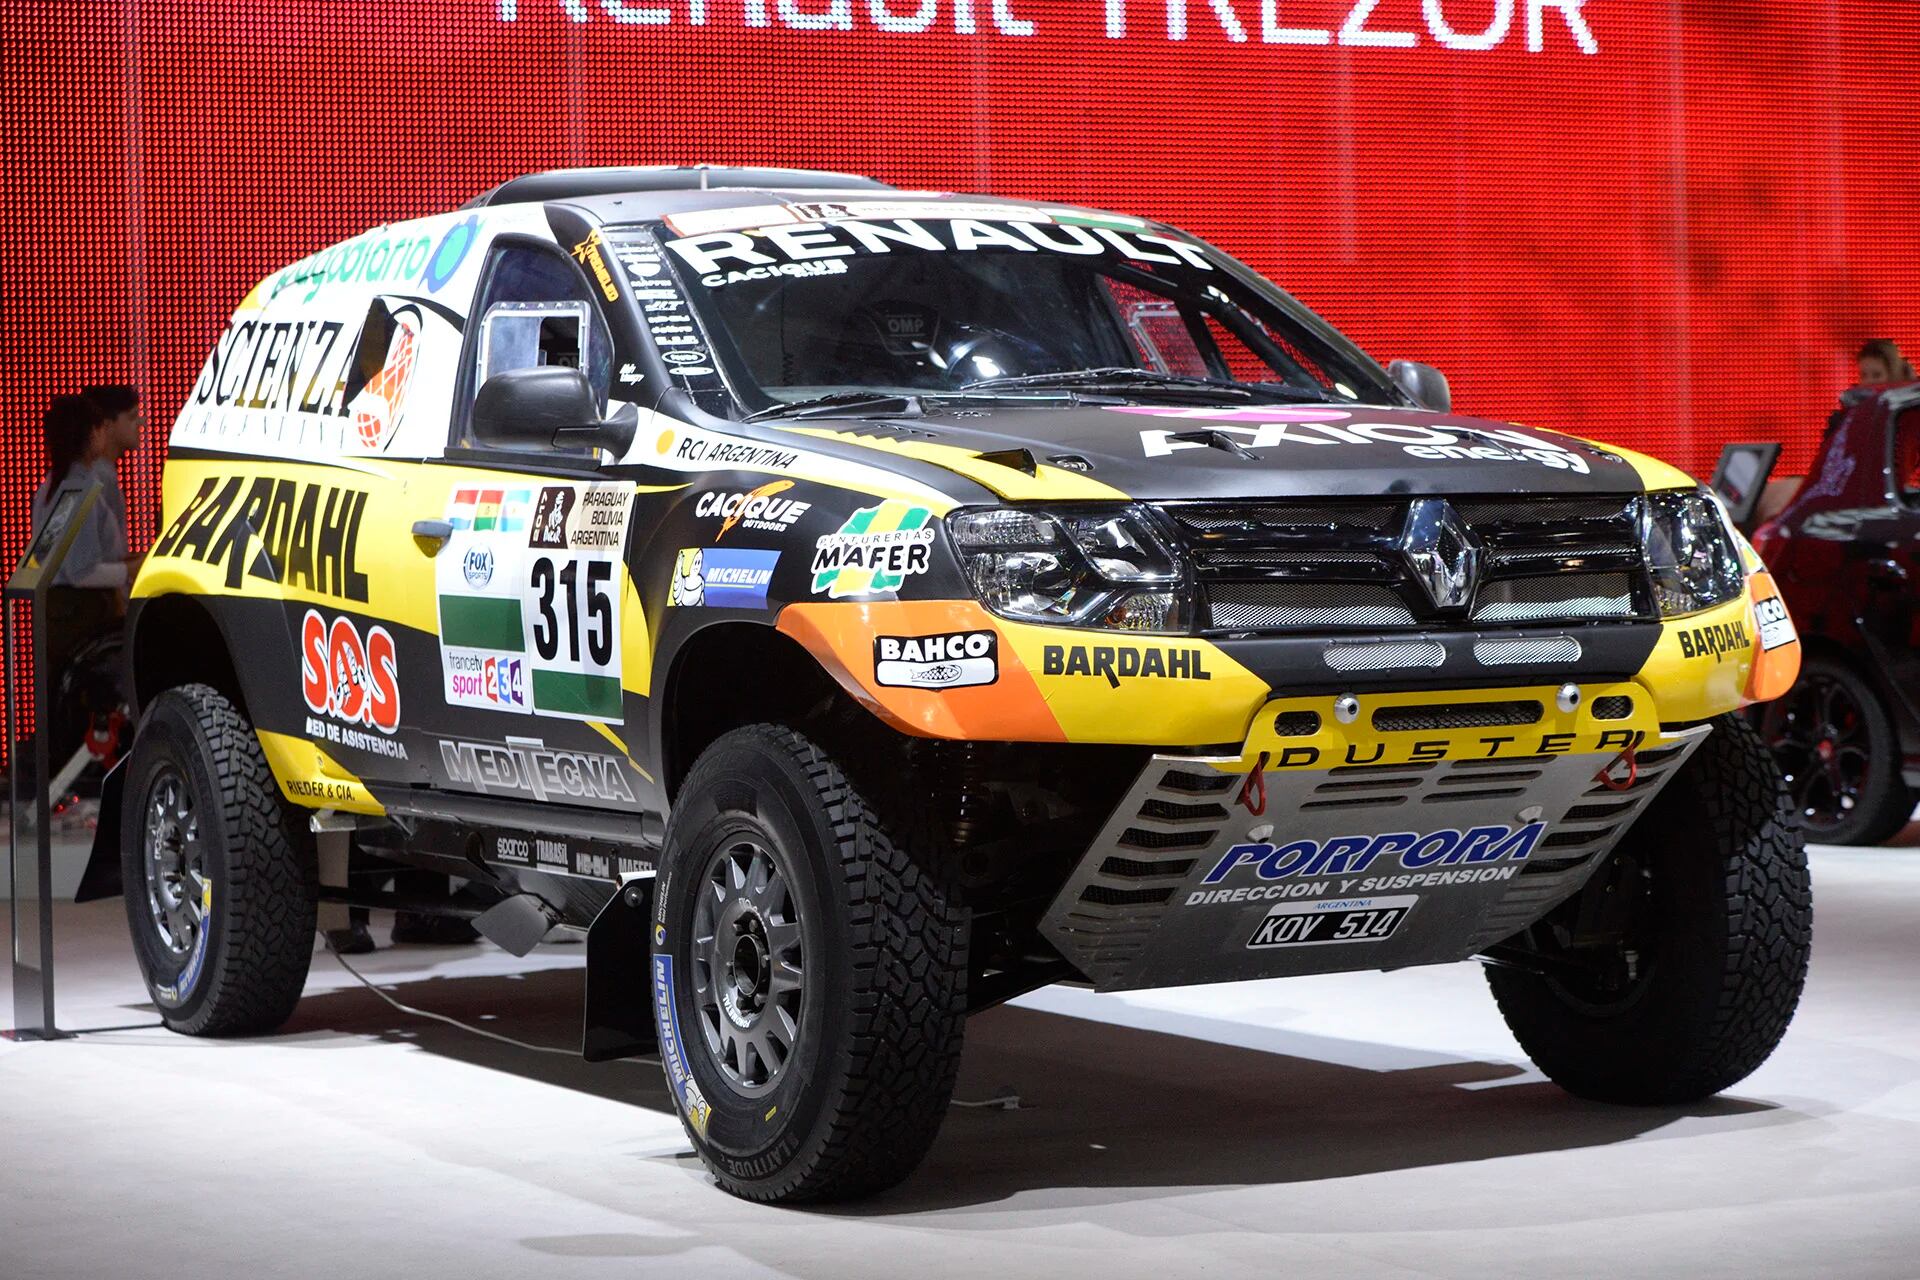 Los pilotos de Renault Sport Emiliano Spataro y Facundo Ardusso, además de correr en el Súper TC 2000, participan del rally más exigente del mundo con la Duster Dakar